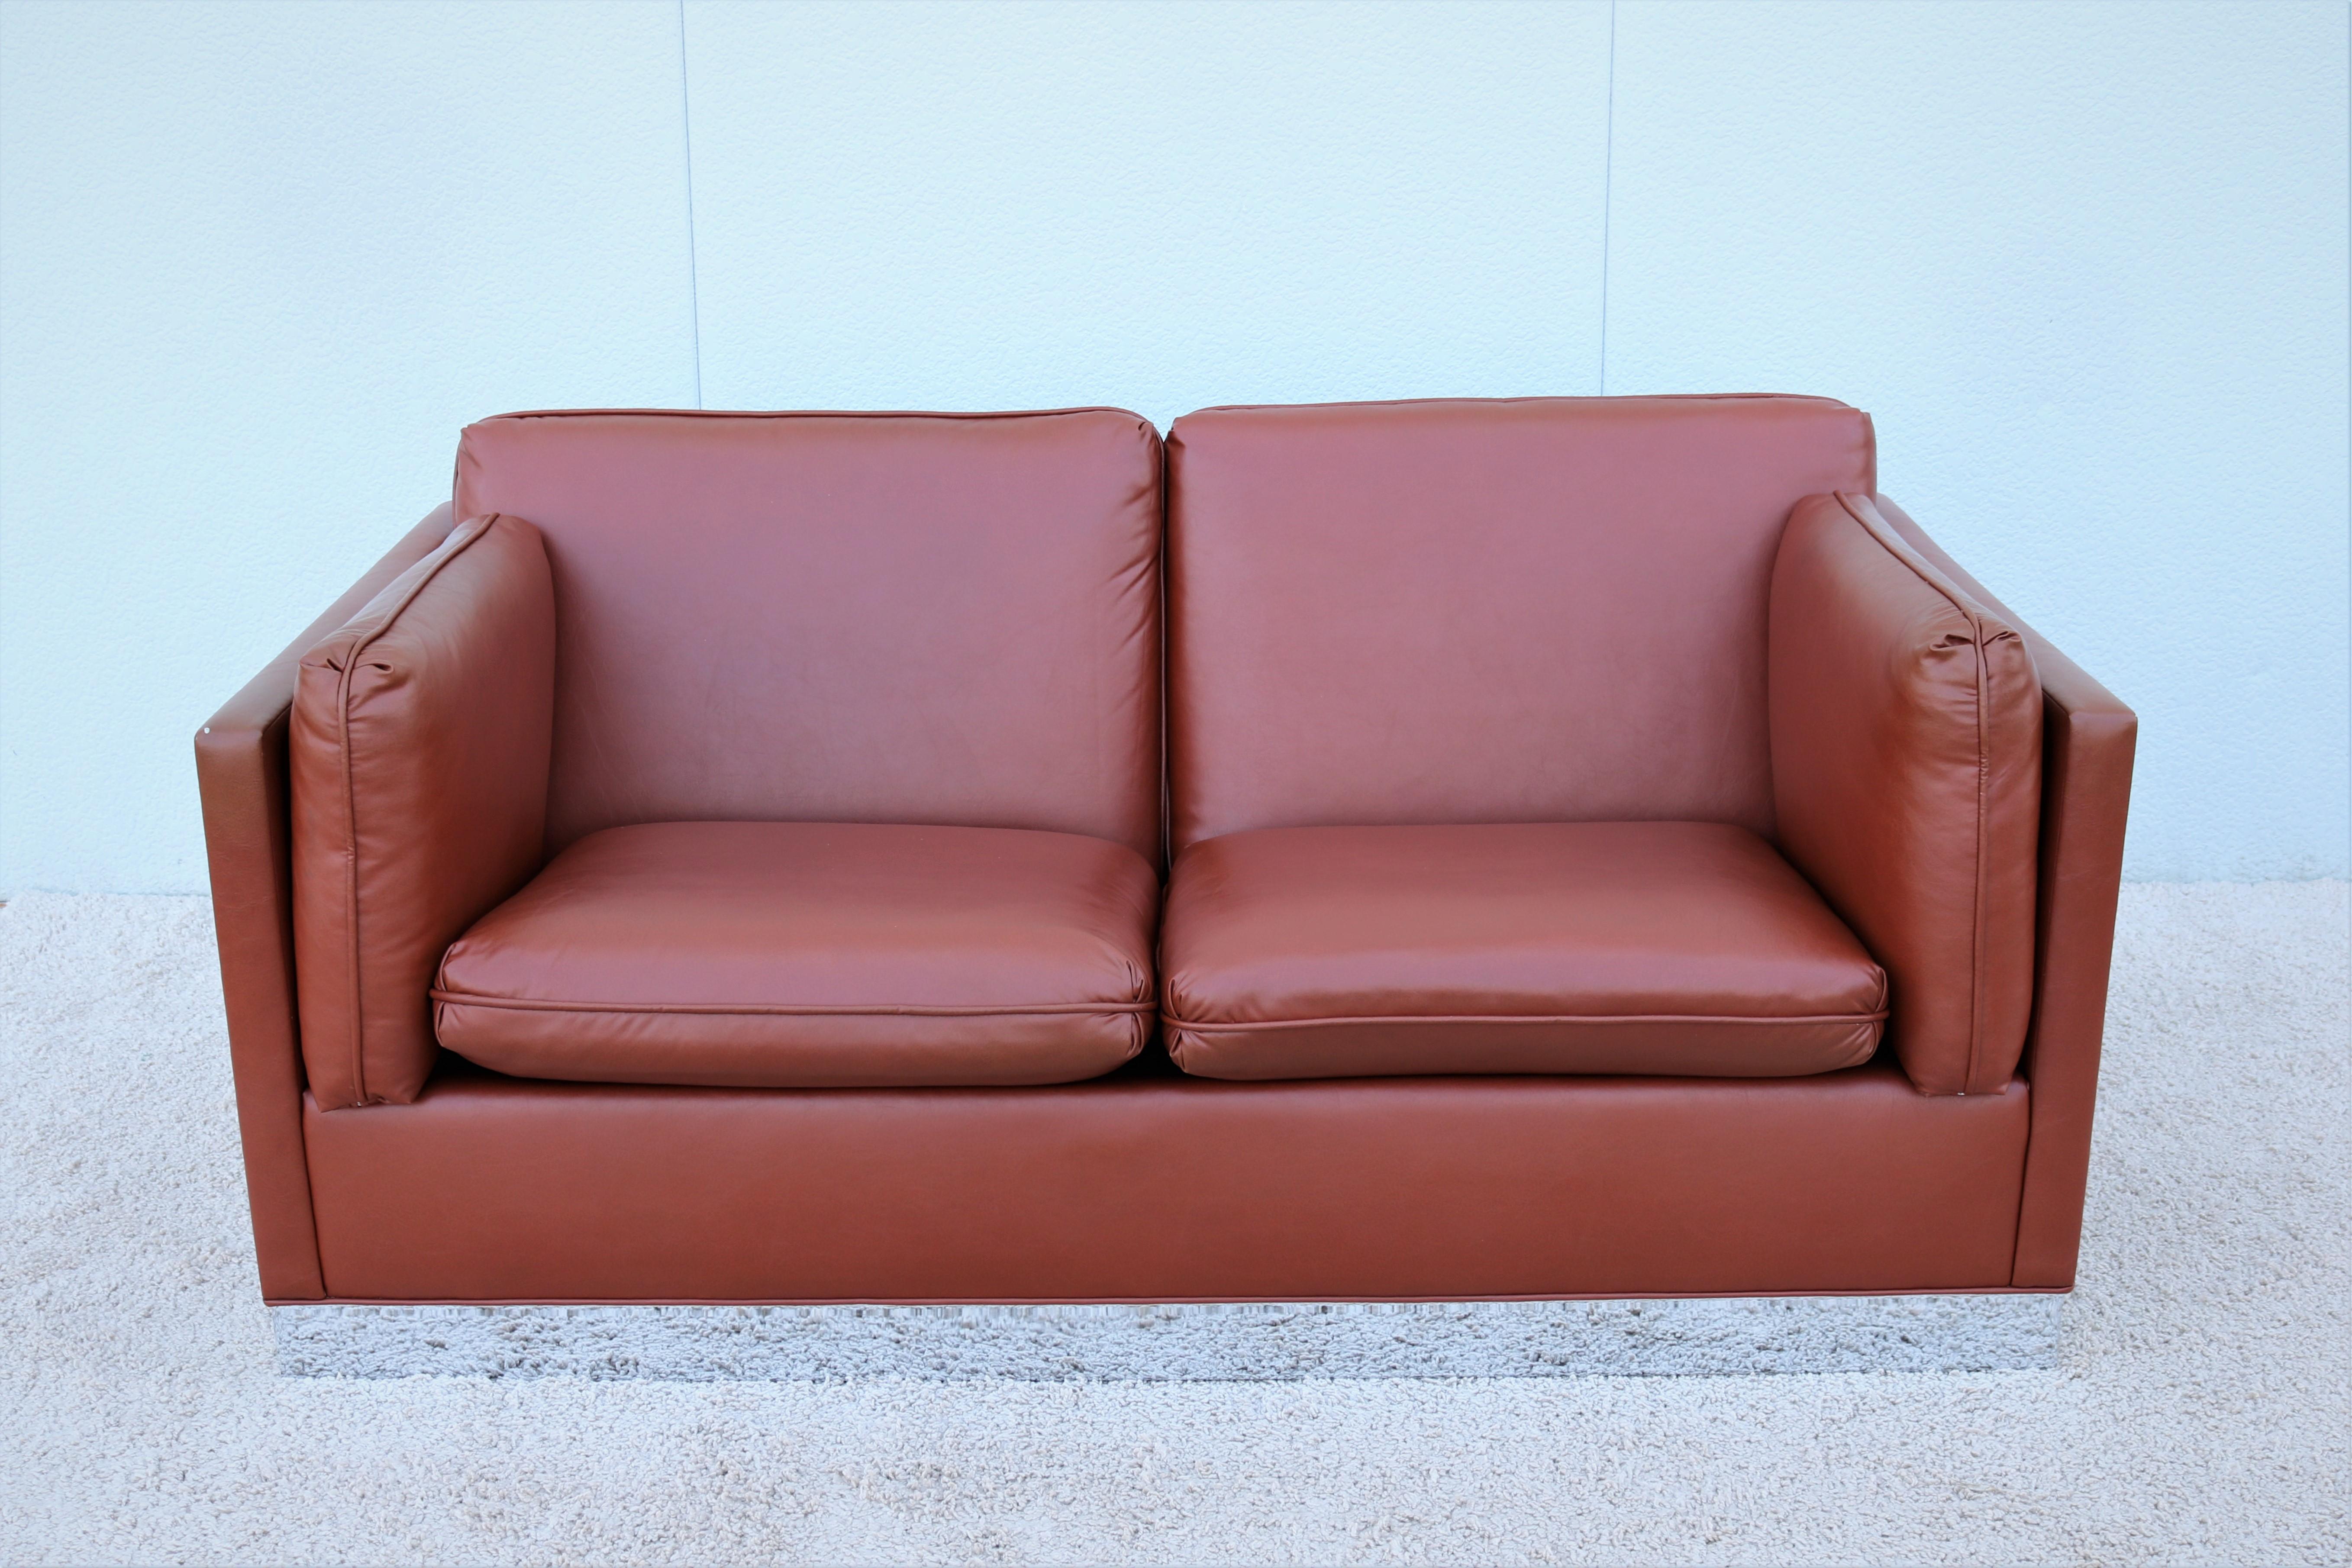 Eine atemberaubende 1970er Milo Baughman Stil Zwei-Sitz-Sofa in fabelhaften Brown Polyurethan-Leder auf Chrom Basis gepolstert.
Die schlanke, kantige Silhouette mit sechs losen Sitz-, Rücken- und Armlehnenkissen hat vollständig abnehmbare